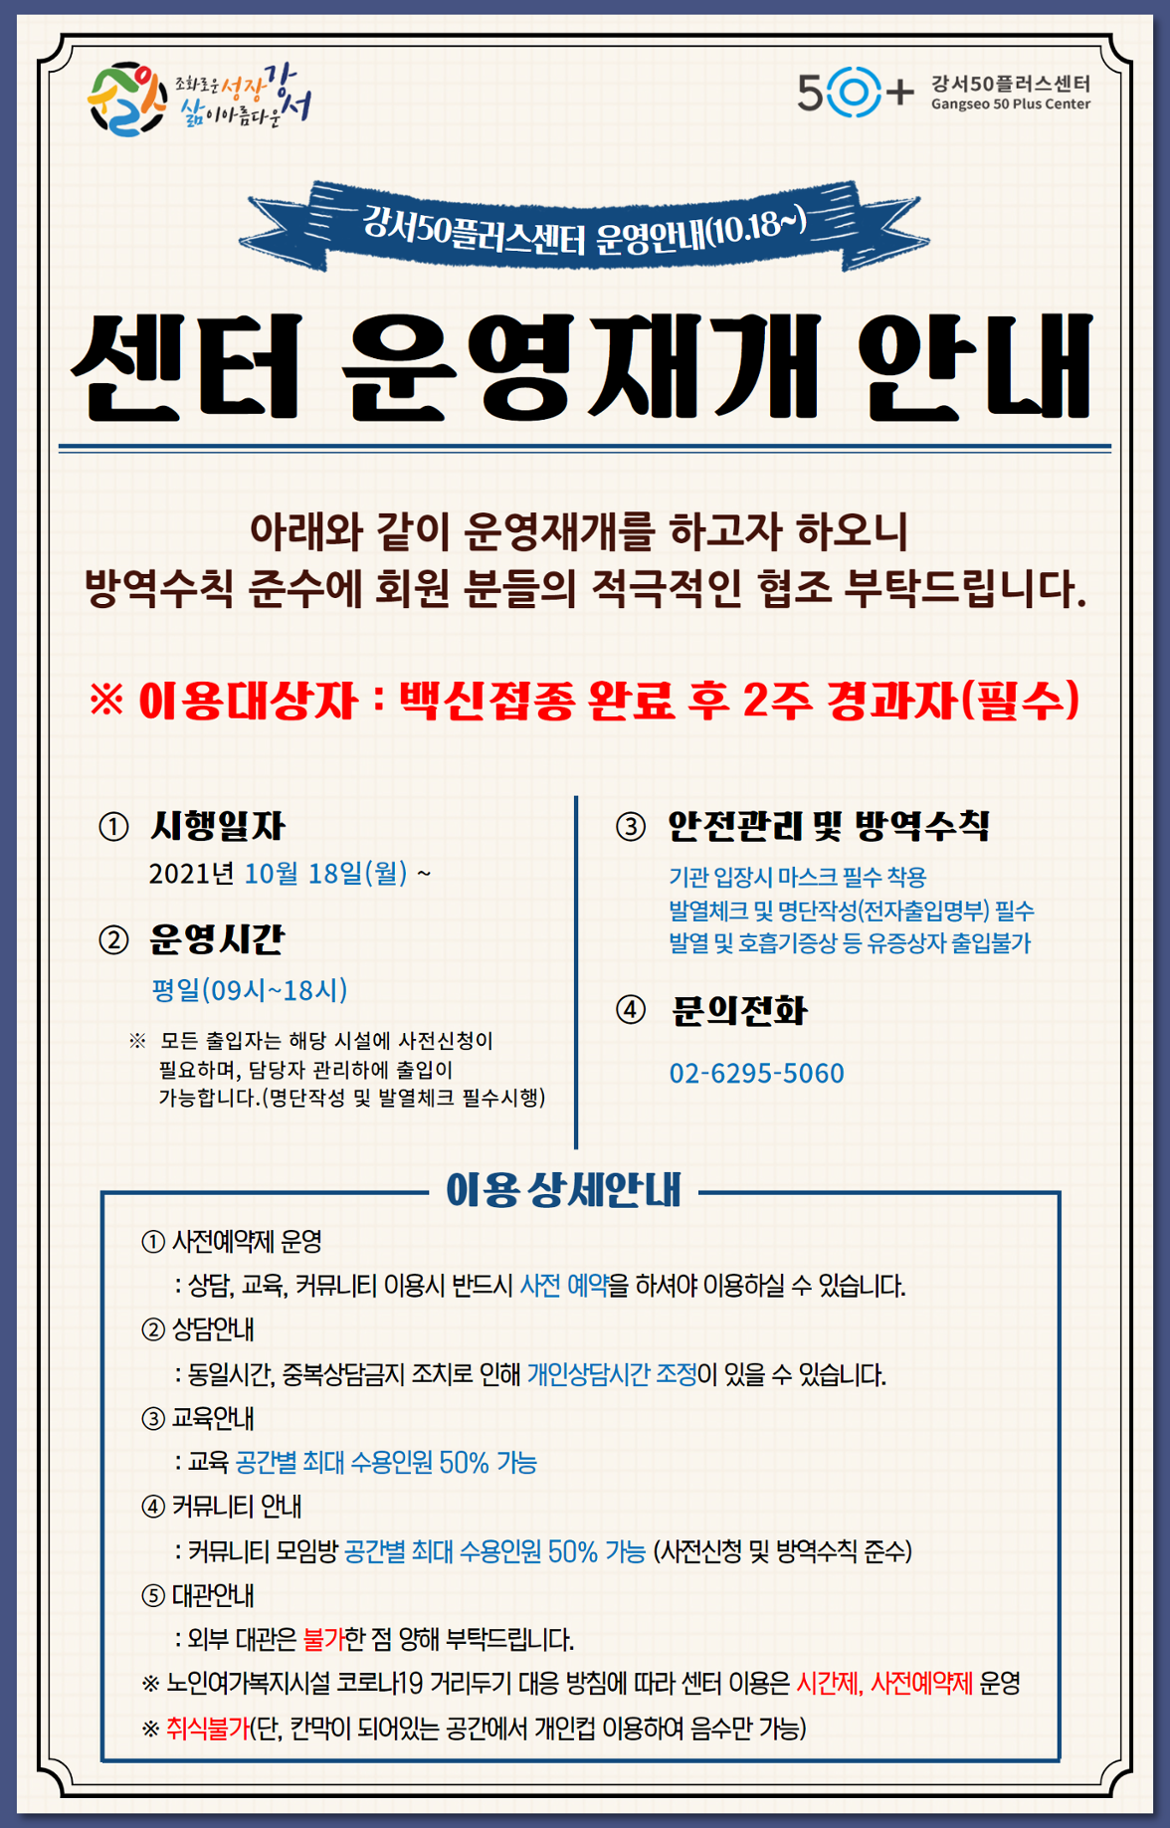 강서50플러스센터+운영+재개+안내_211018+(2).png